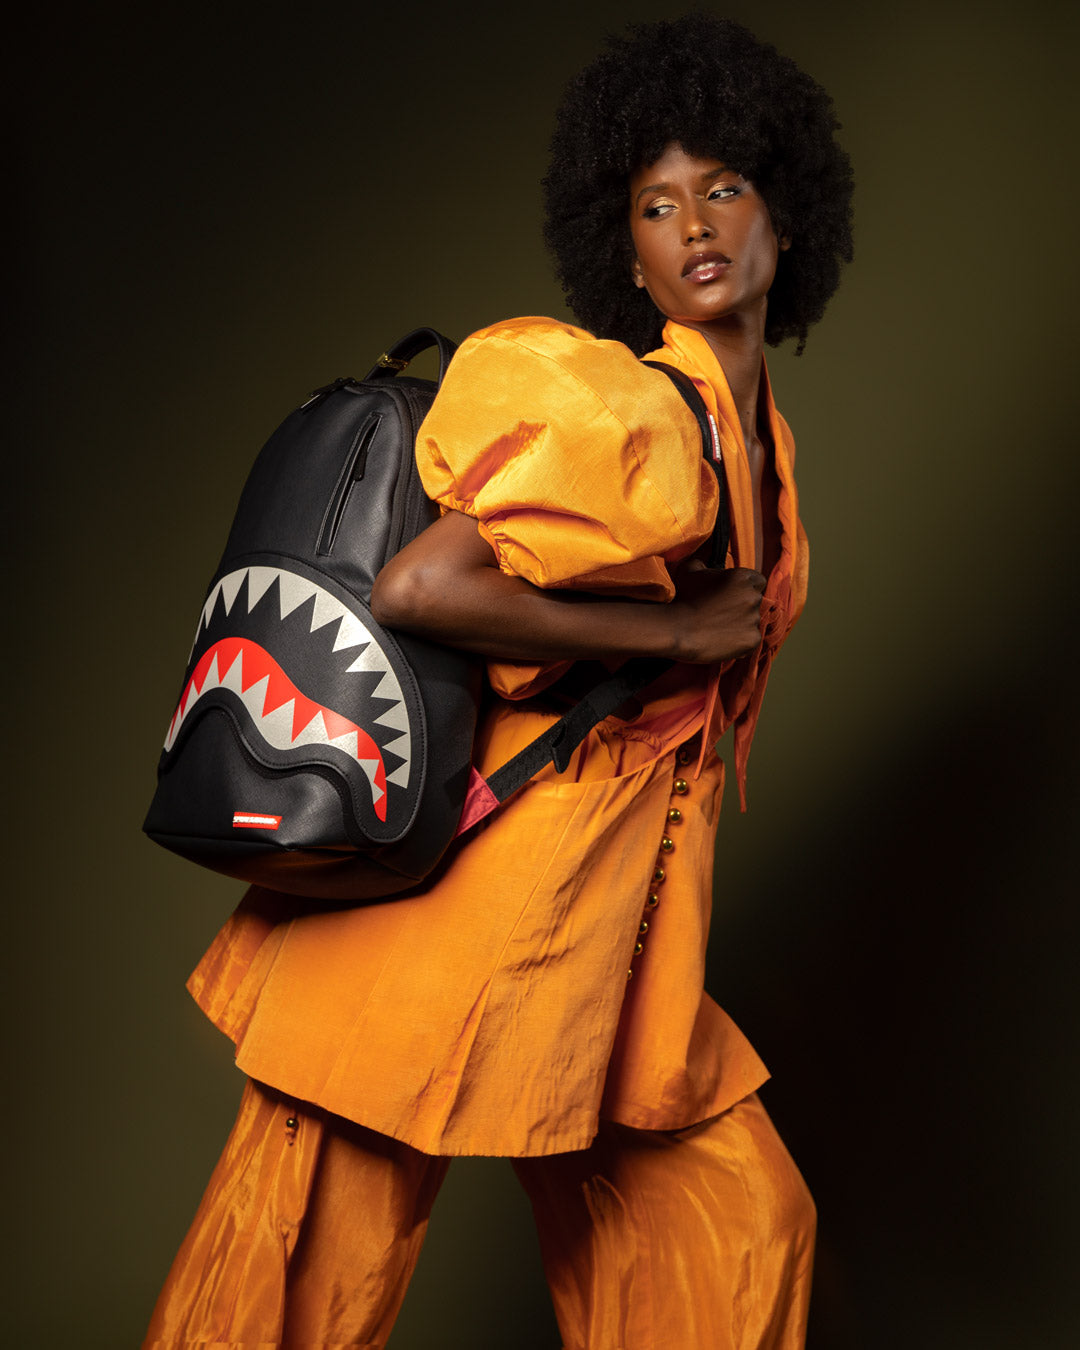 Shark Supreme Backpacks for Sale